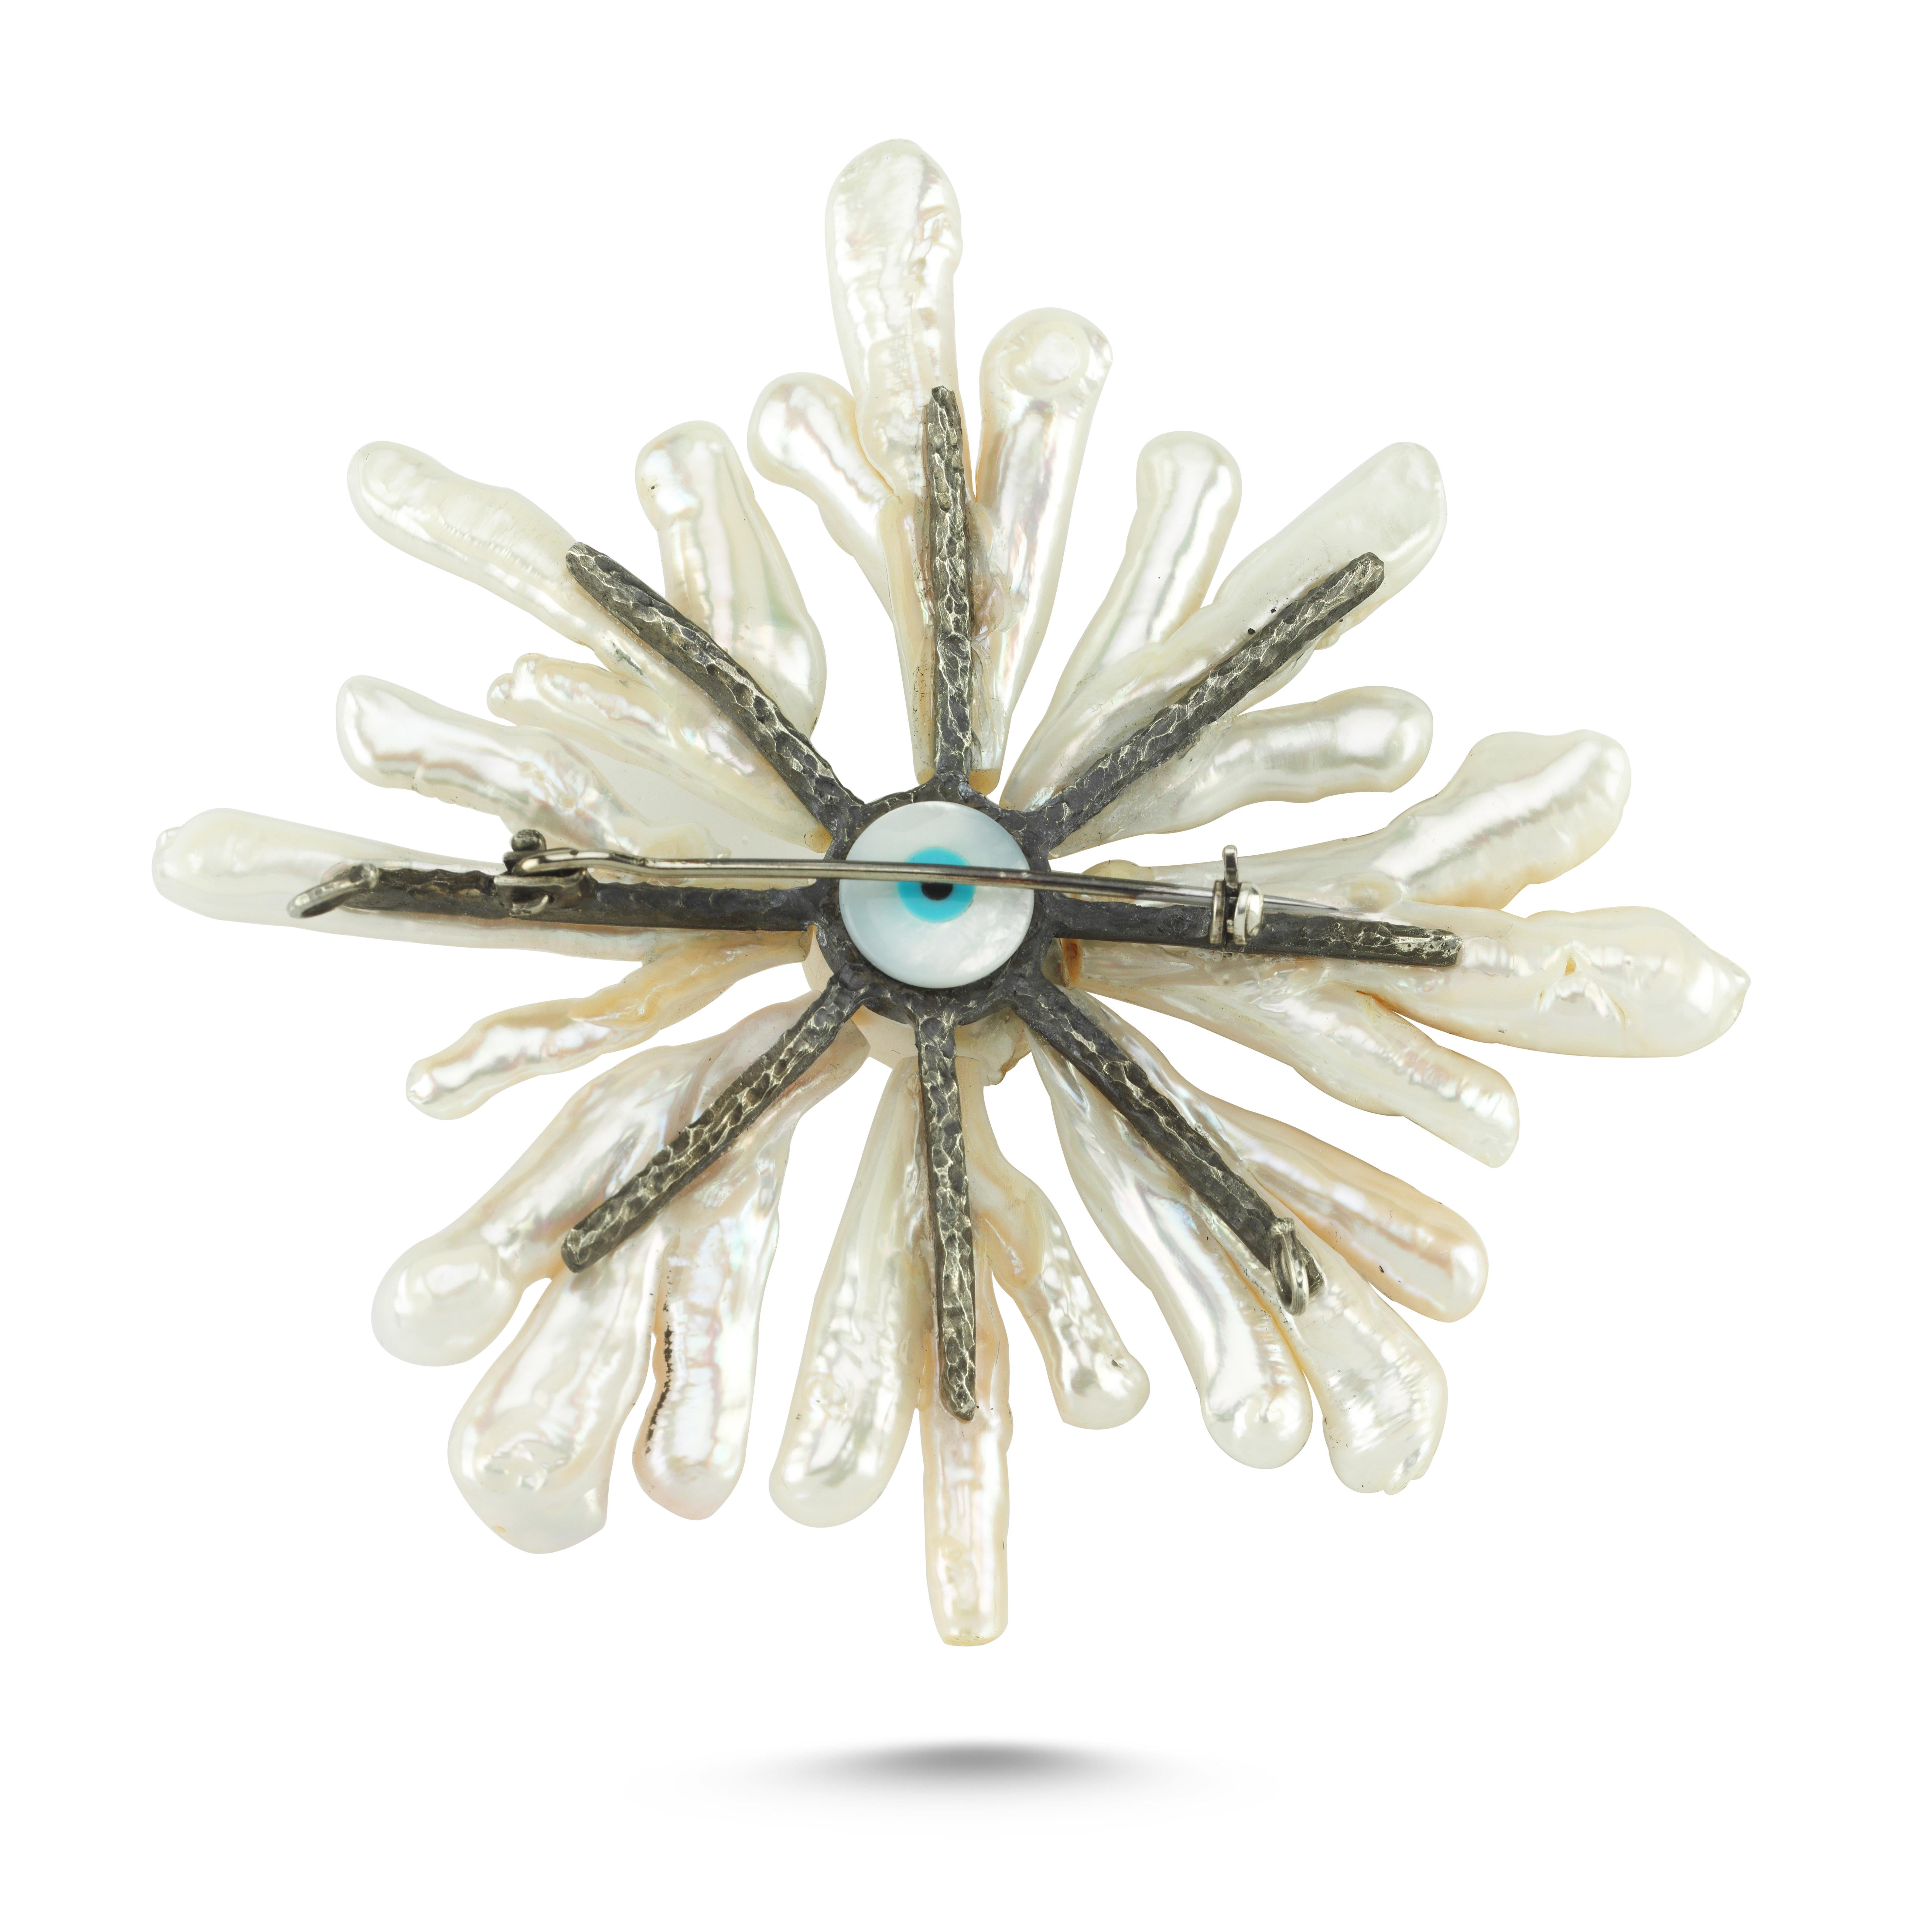 Cette broche en argent 925 et perles baroques est fabriquée à la main par des artisans orfèvres qui ont inspiré le designer Emre Osmanlar, à partir de formations inhabituelles de perles assemblées dans un motif de soleil, de couleurs pures et